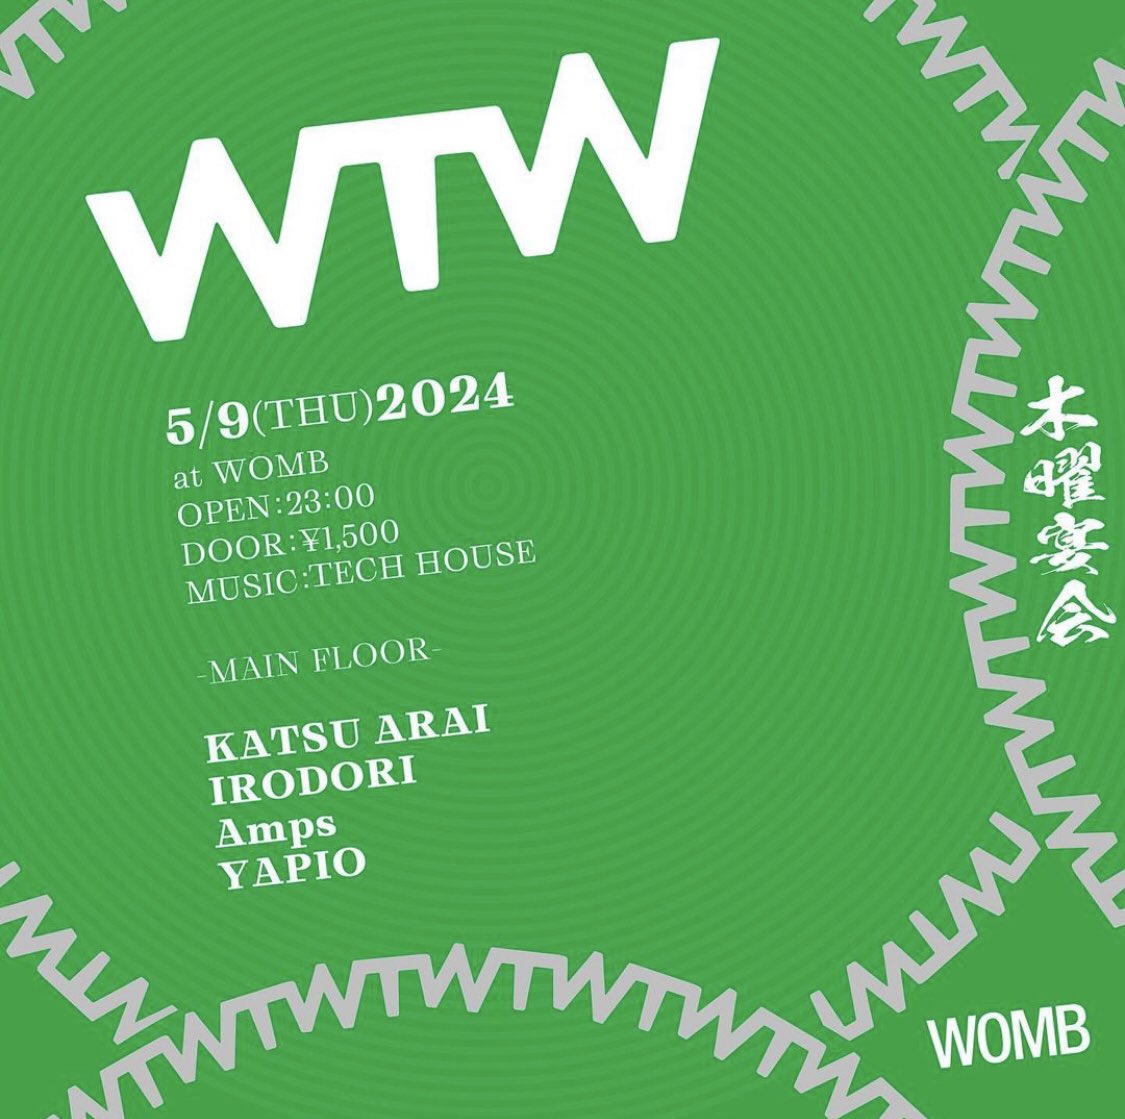 今週5月9日（木）渋谷WOMB @WOMB_Tokyo にて開催のWTWに出演します！ 平日でありながら毎回エッジーなサウンドで盛り上がる気鋭パーティーということでDeep Tech / Tech House 全振りで行きます！ WOMBでは初メインフロアということでめちゃめちゃ楽しみ！ GW明けも踊っていきましょう！